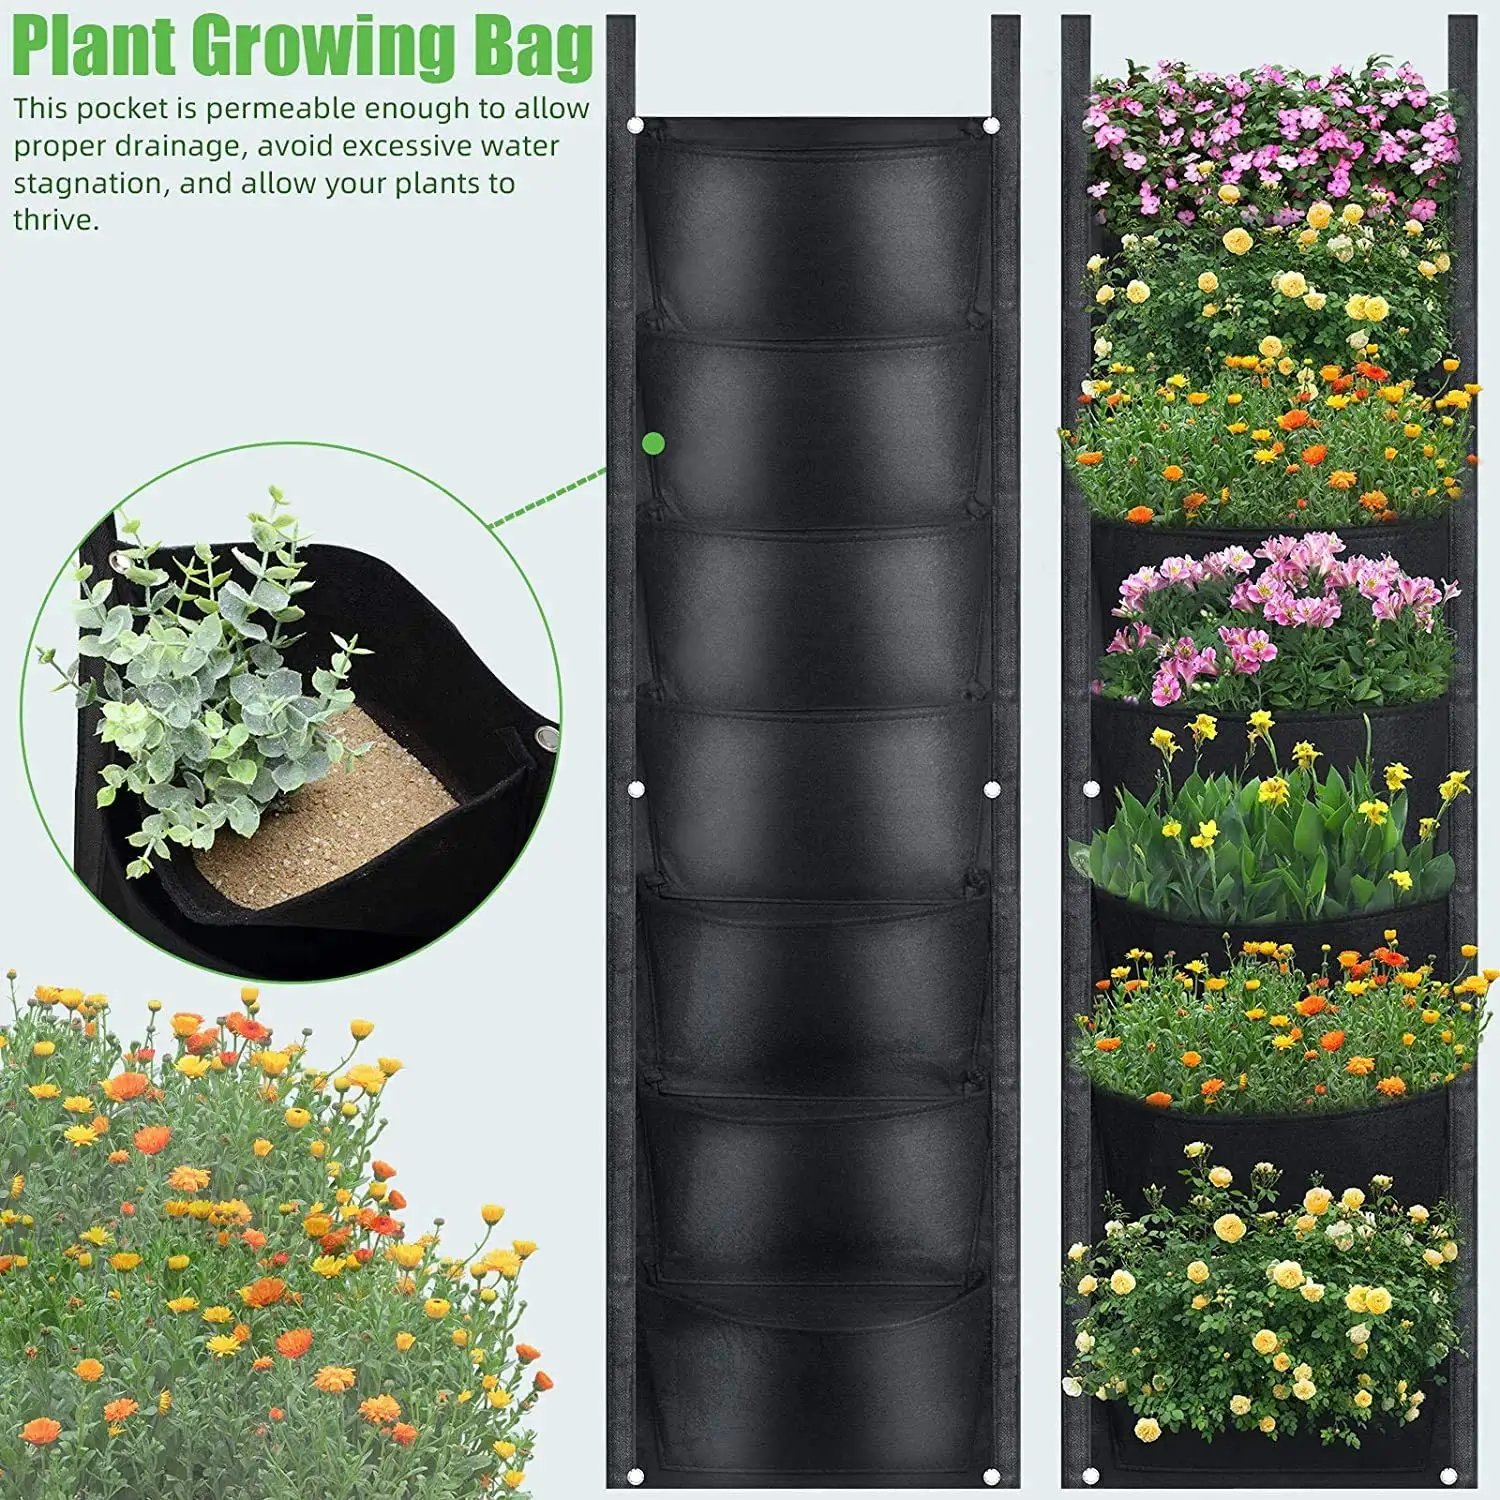 Sebze şitaki mantarı büyüyen çanta/keçe büyümek çanta dikey duvara monte asılı çanta büyümek